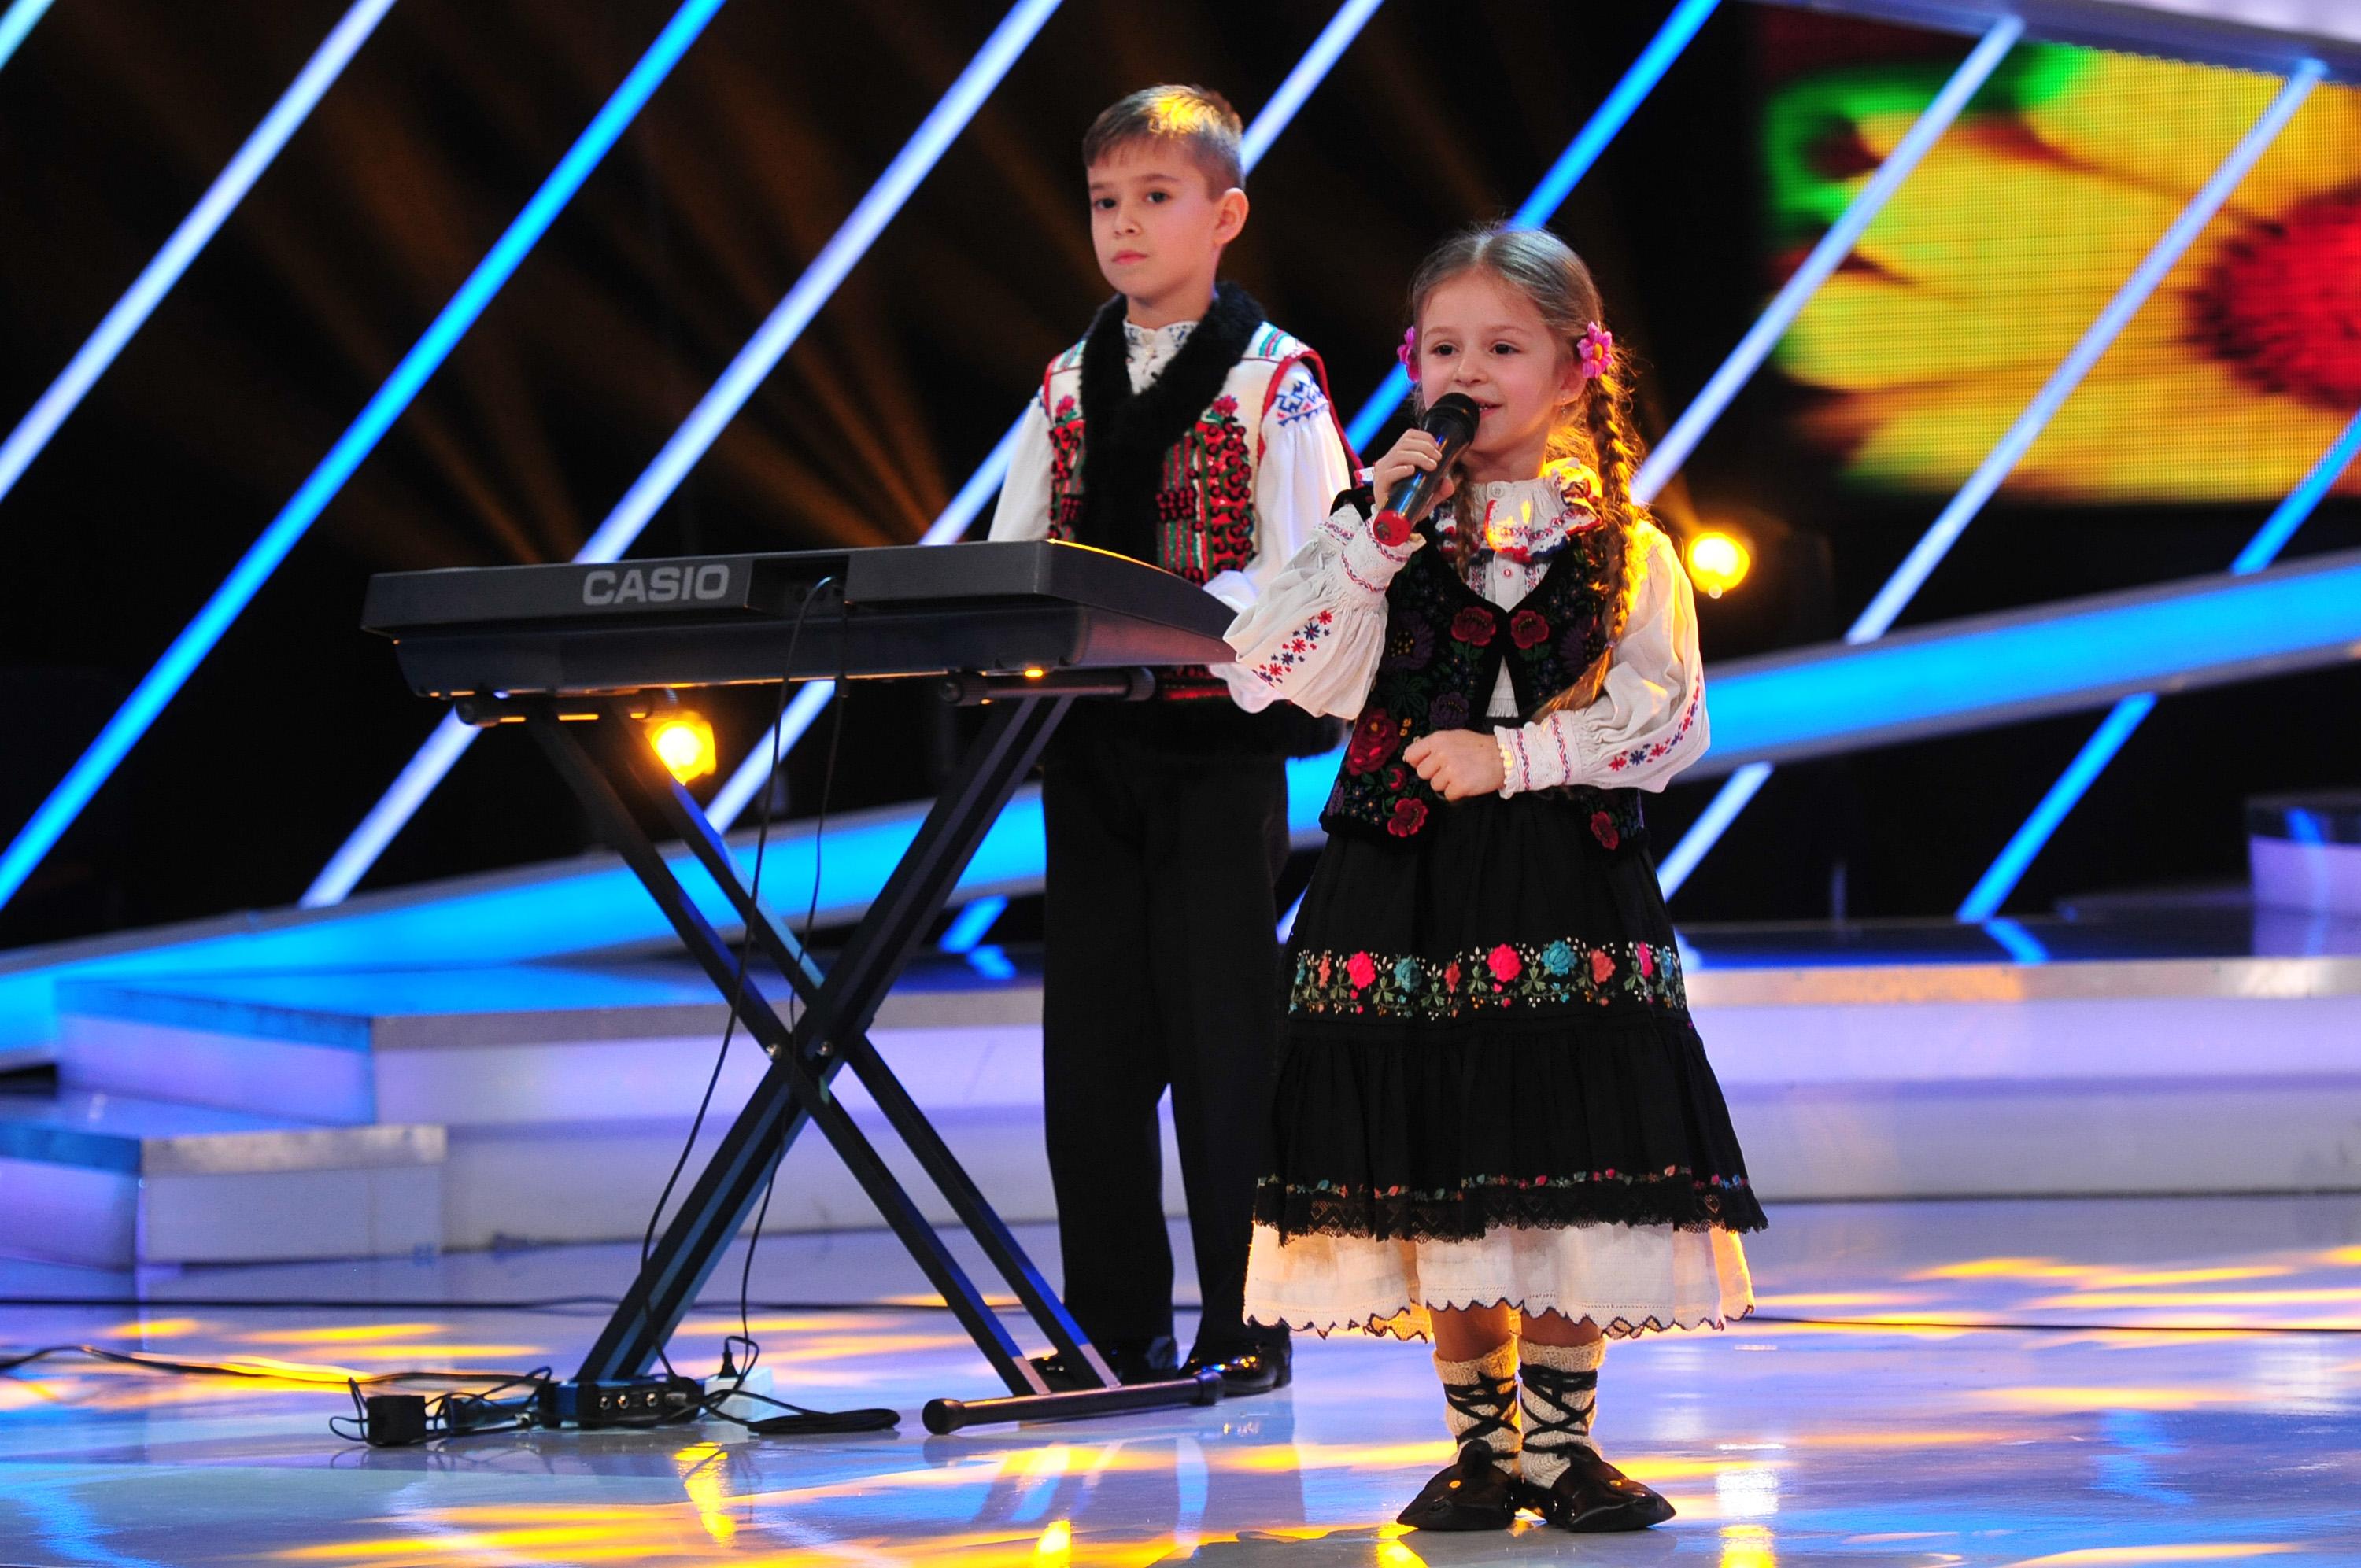 Hop și-așa, mândră-i Alexandra mea! Cea  mai micuță concurentă a serii, un nou nume de trecut pe lista artiștilor de folclor din România